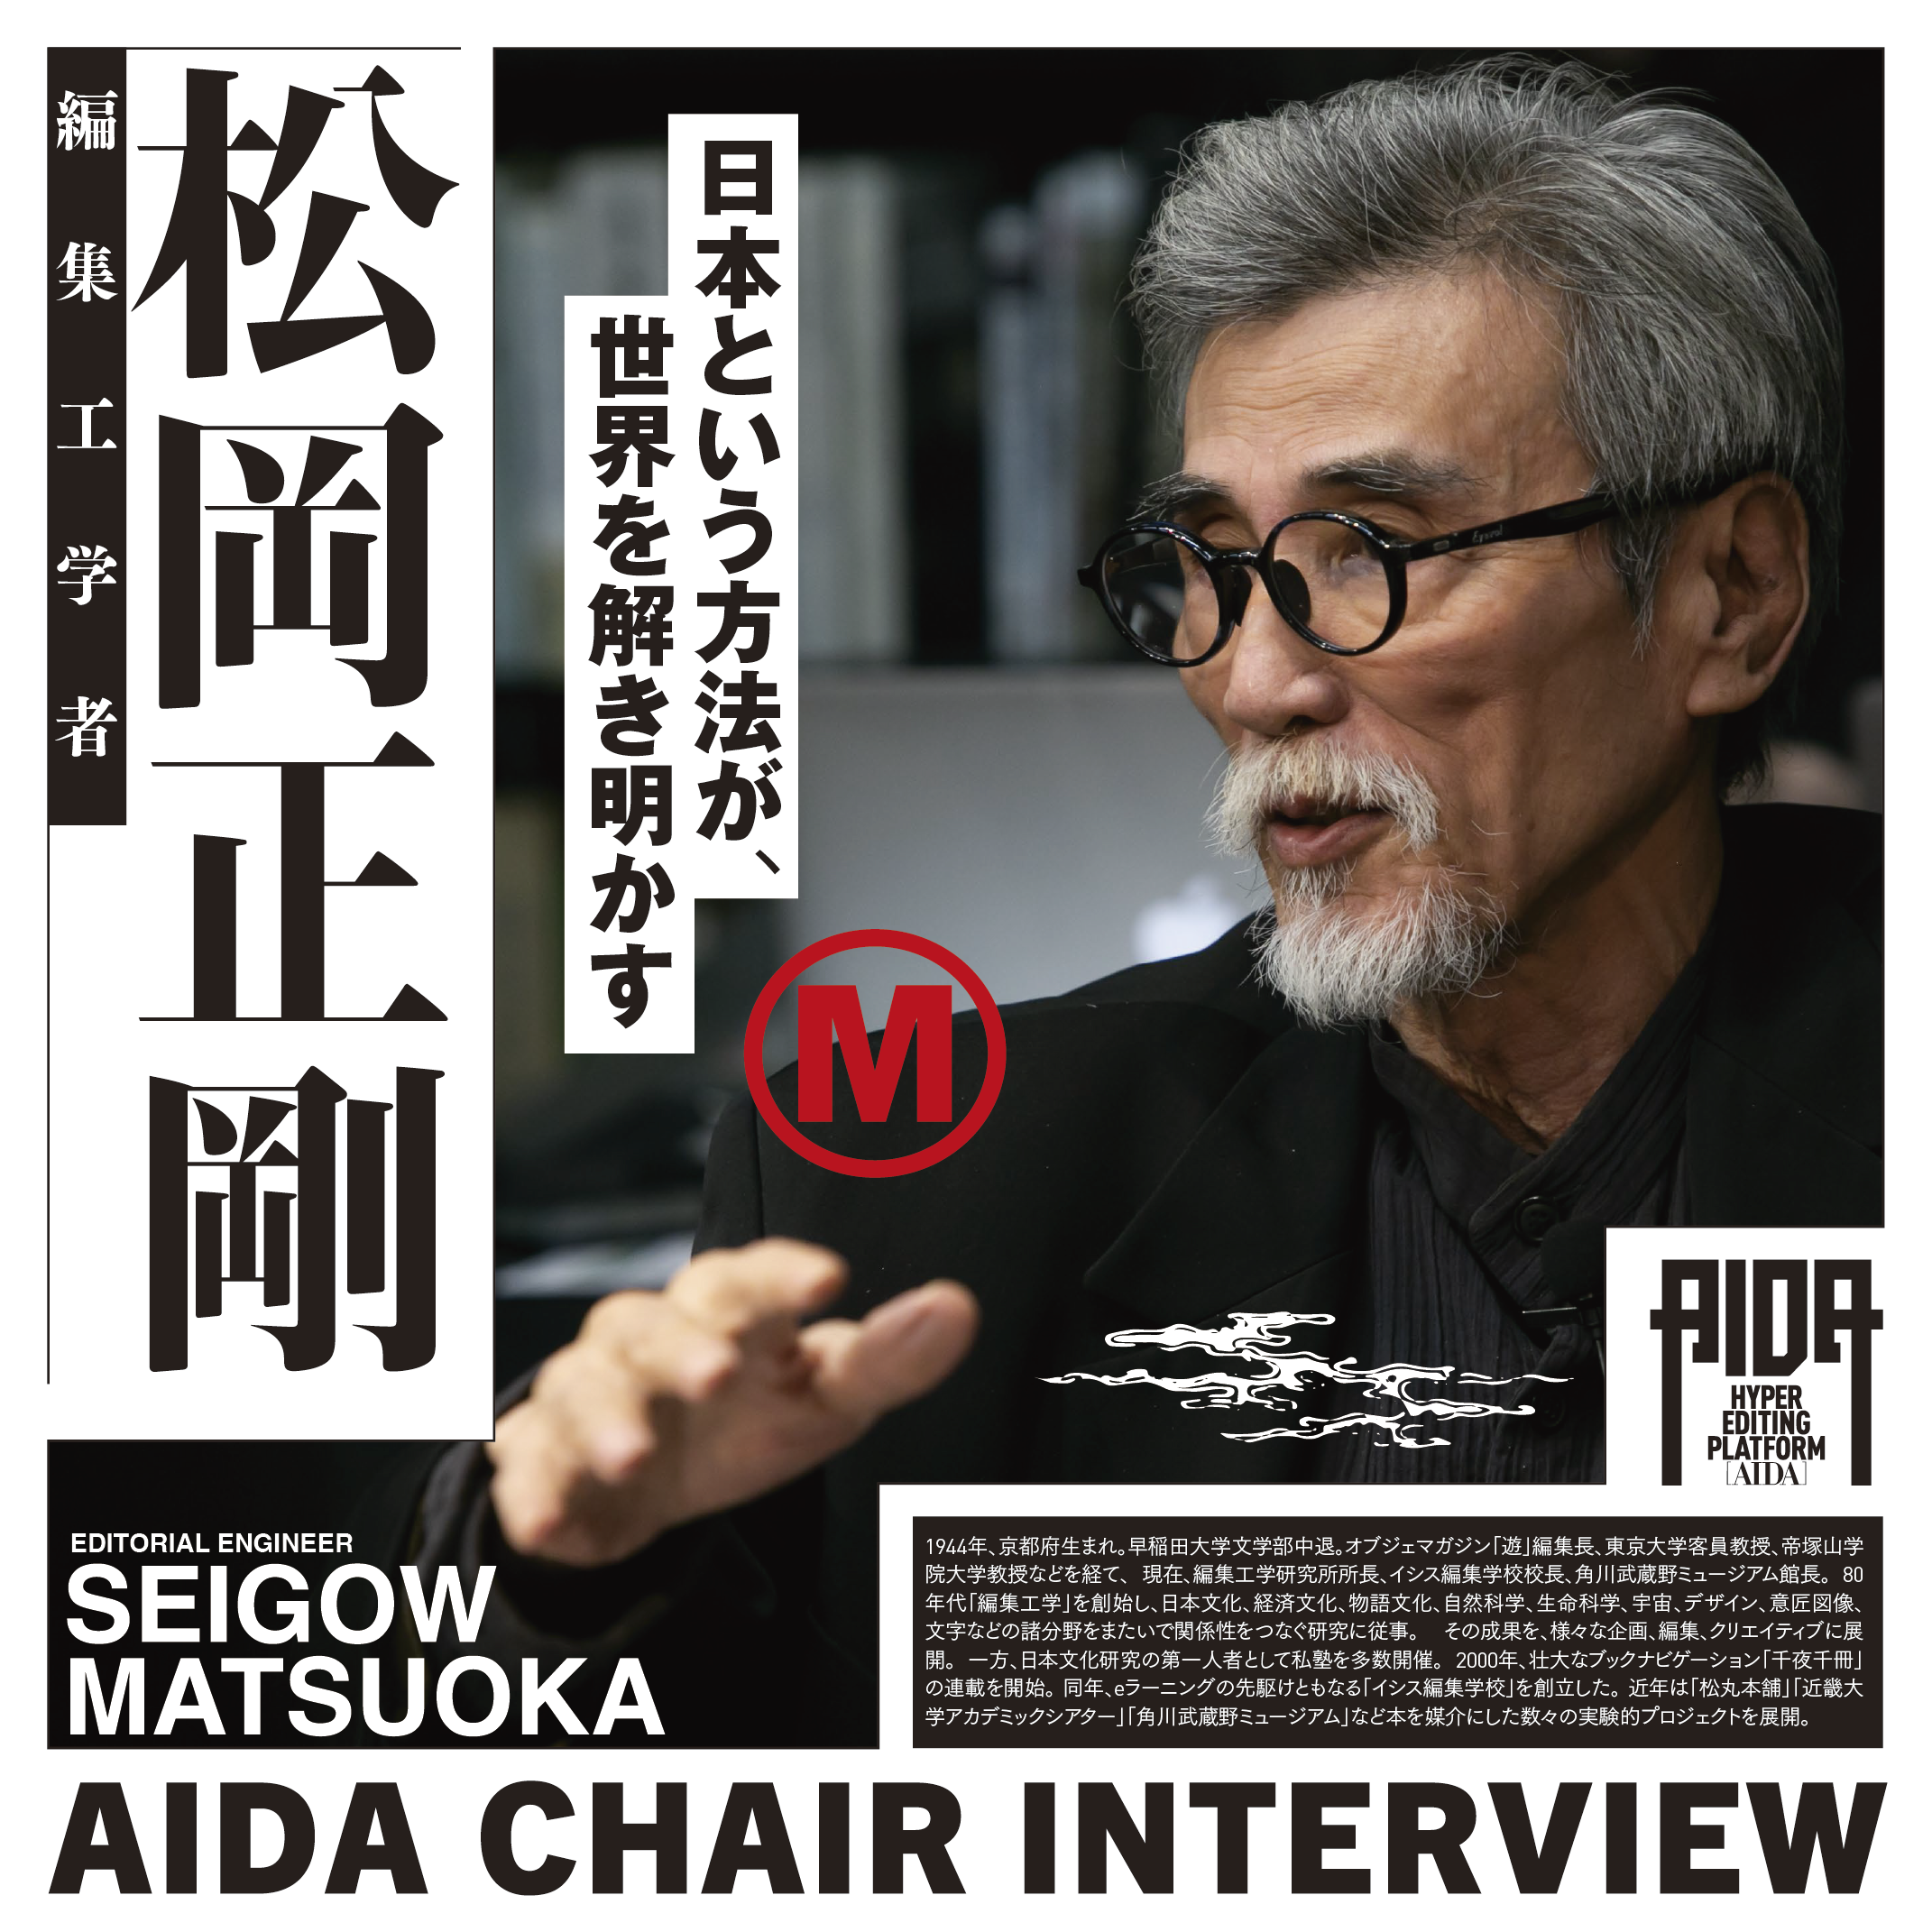 AIDA】座長松岡正剛インタビュー「日本語としるしのあいだ」をめぐって